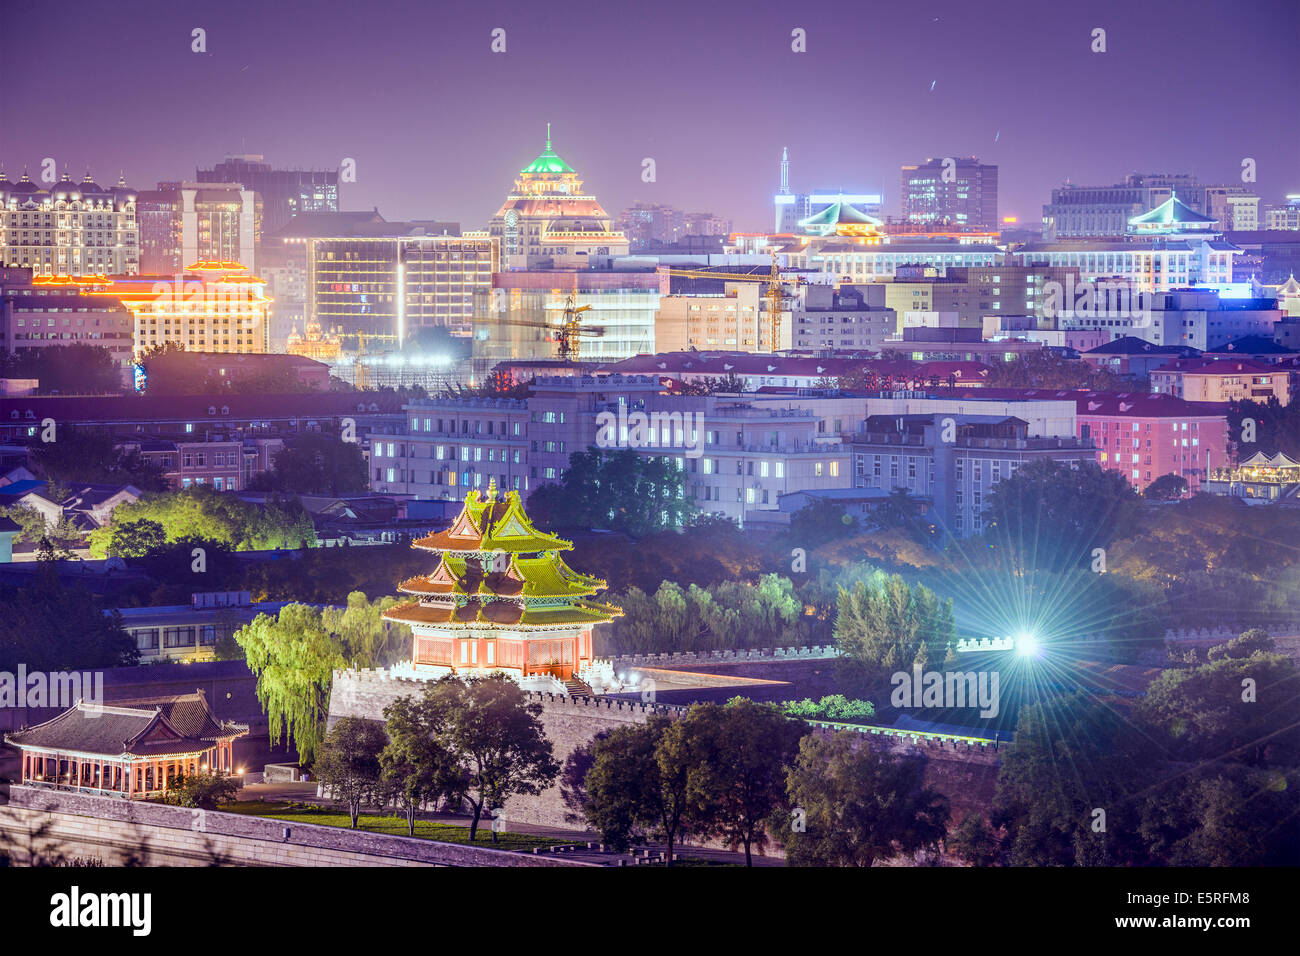 Pechino, Cina presso la città imperiale porta nord. Foto Stock